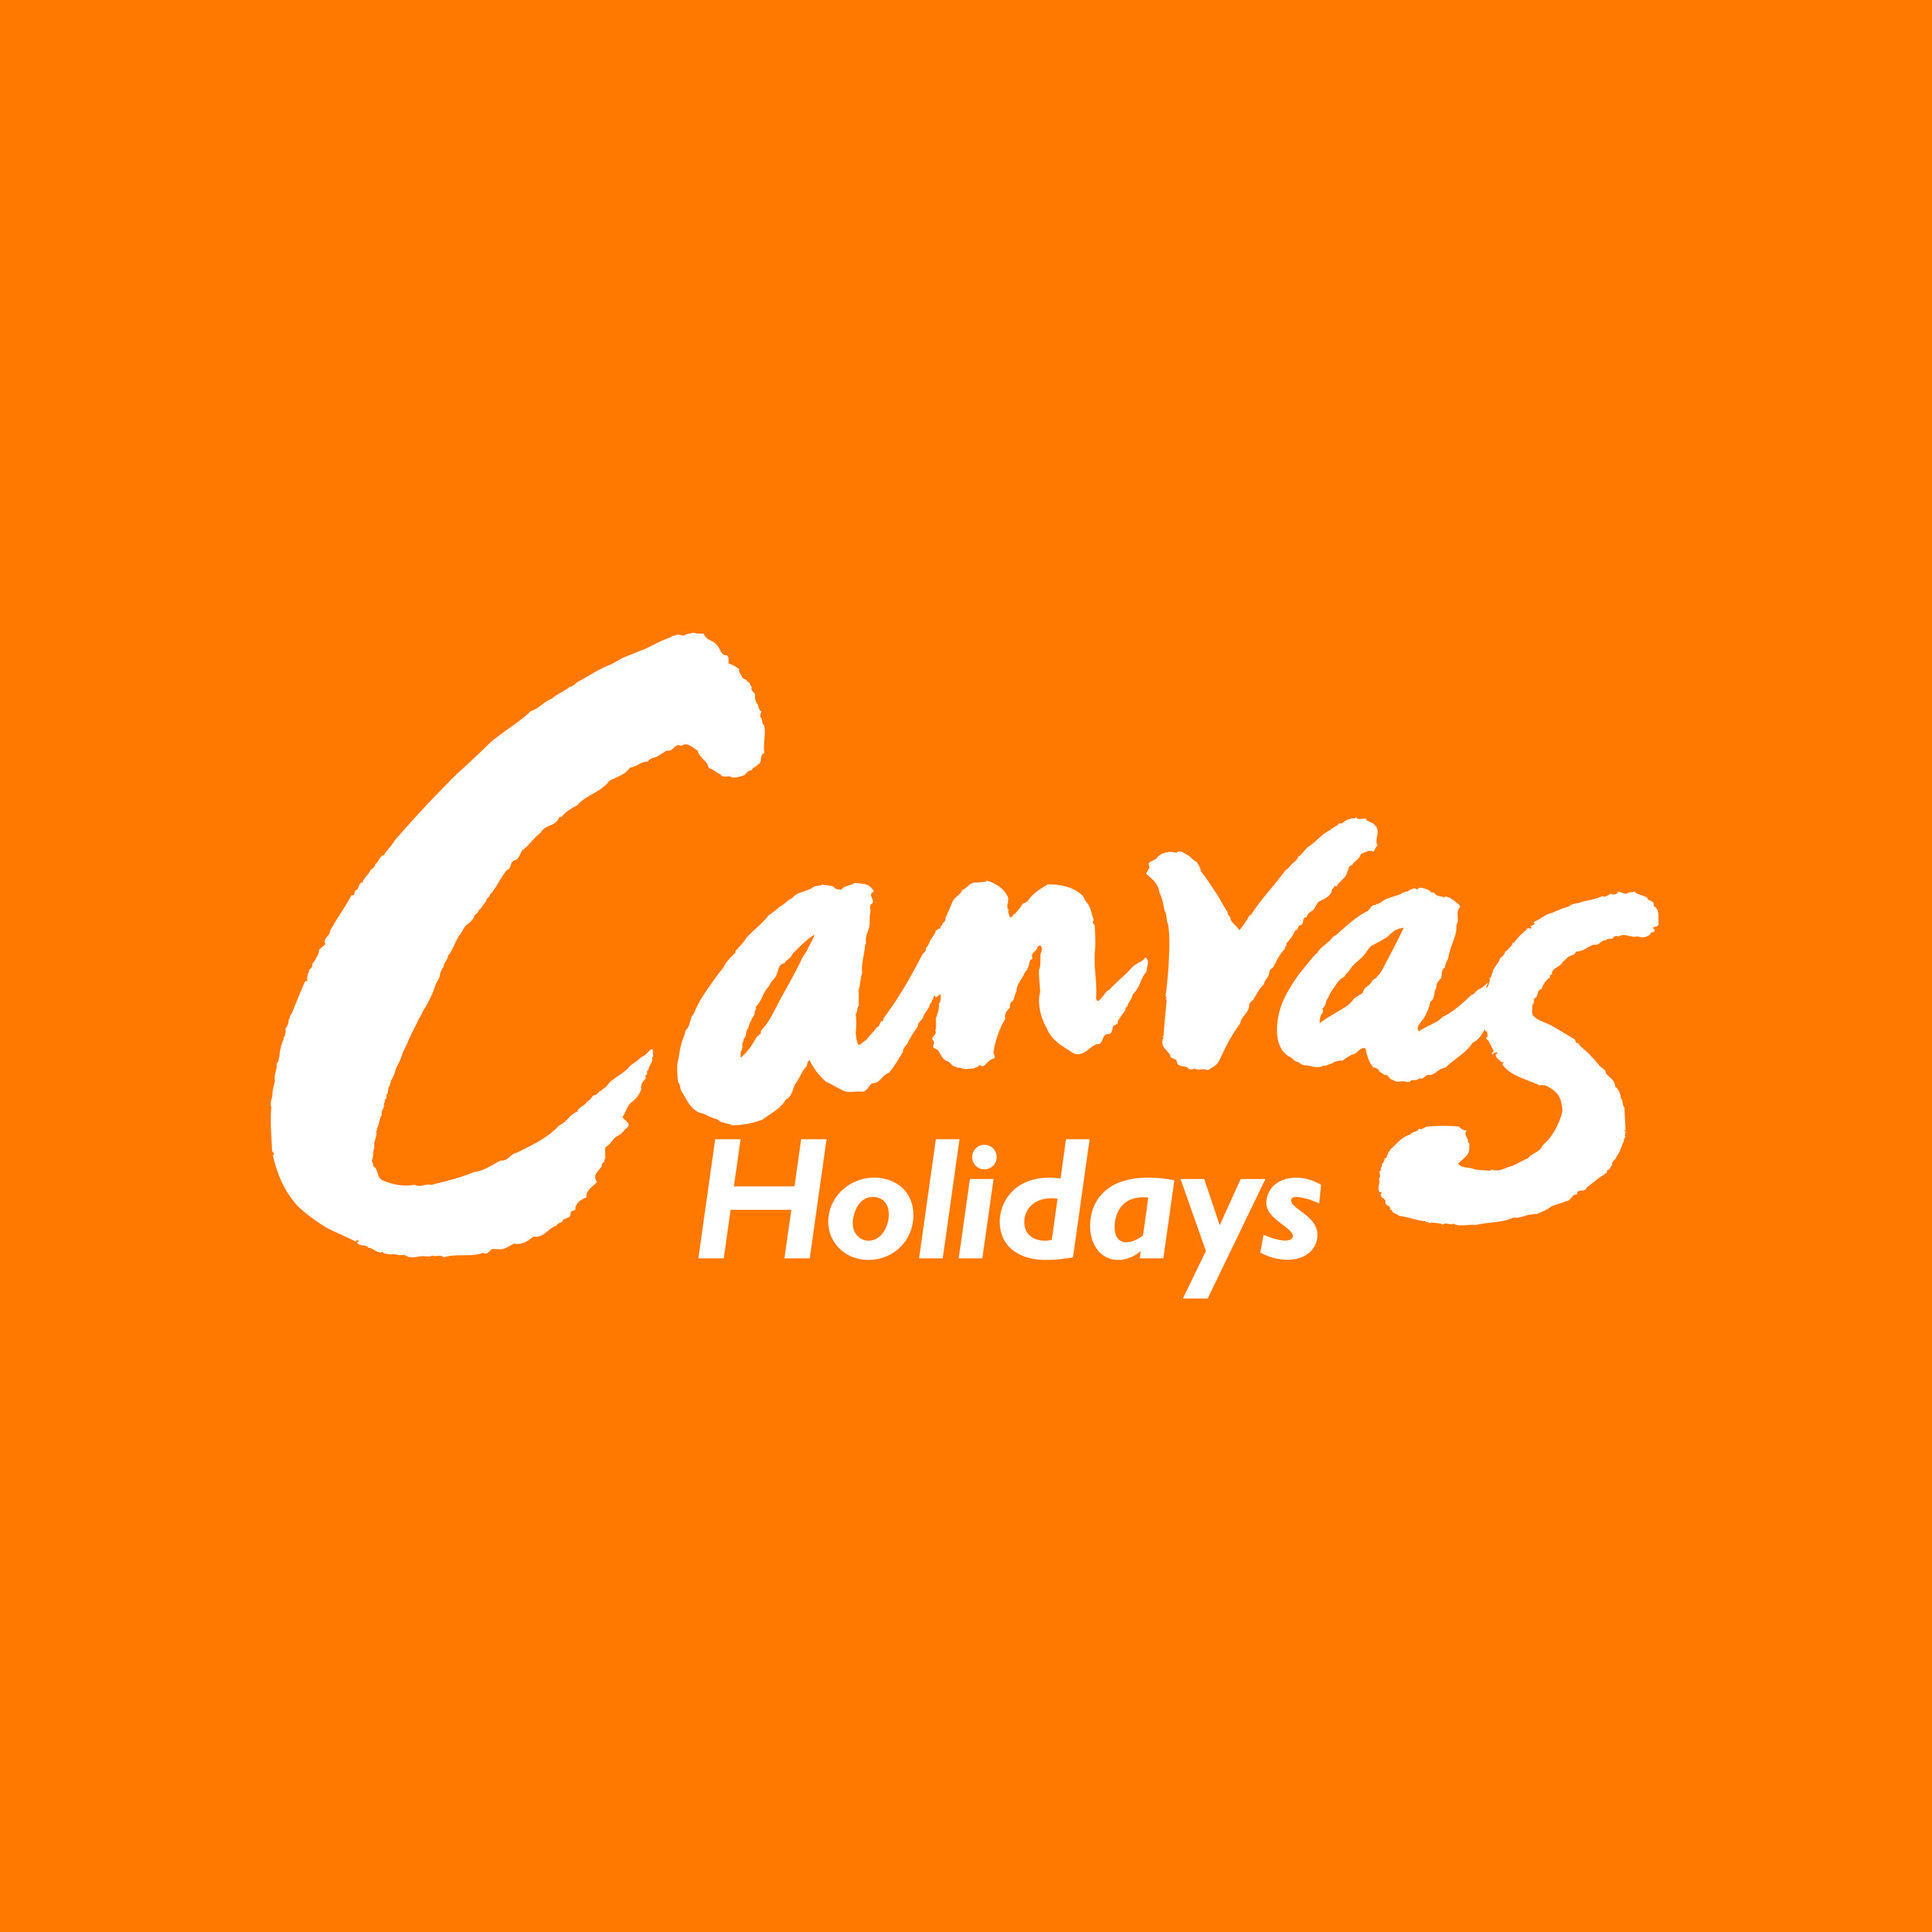 Yellow Orange Logo - Canvas Holidays white on orange logo - JuggleMum